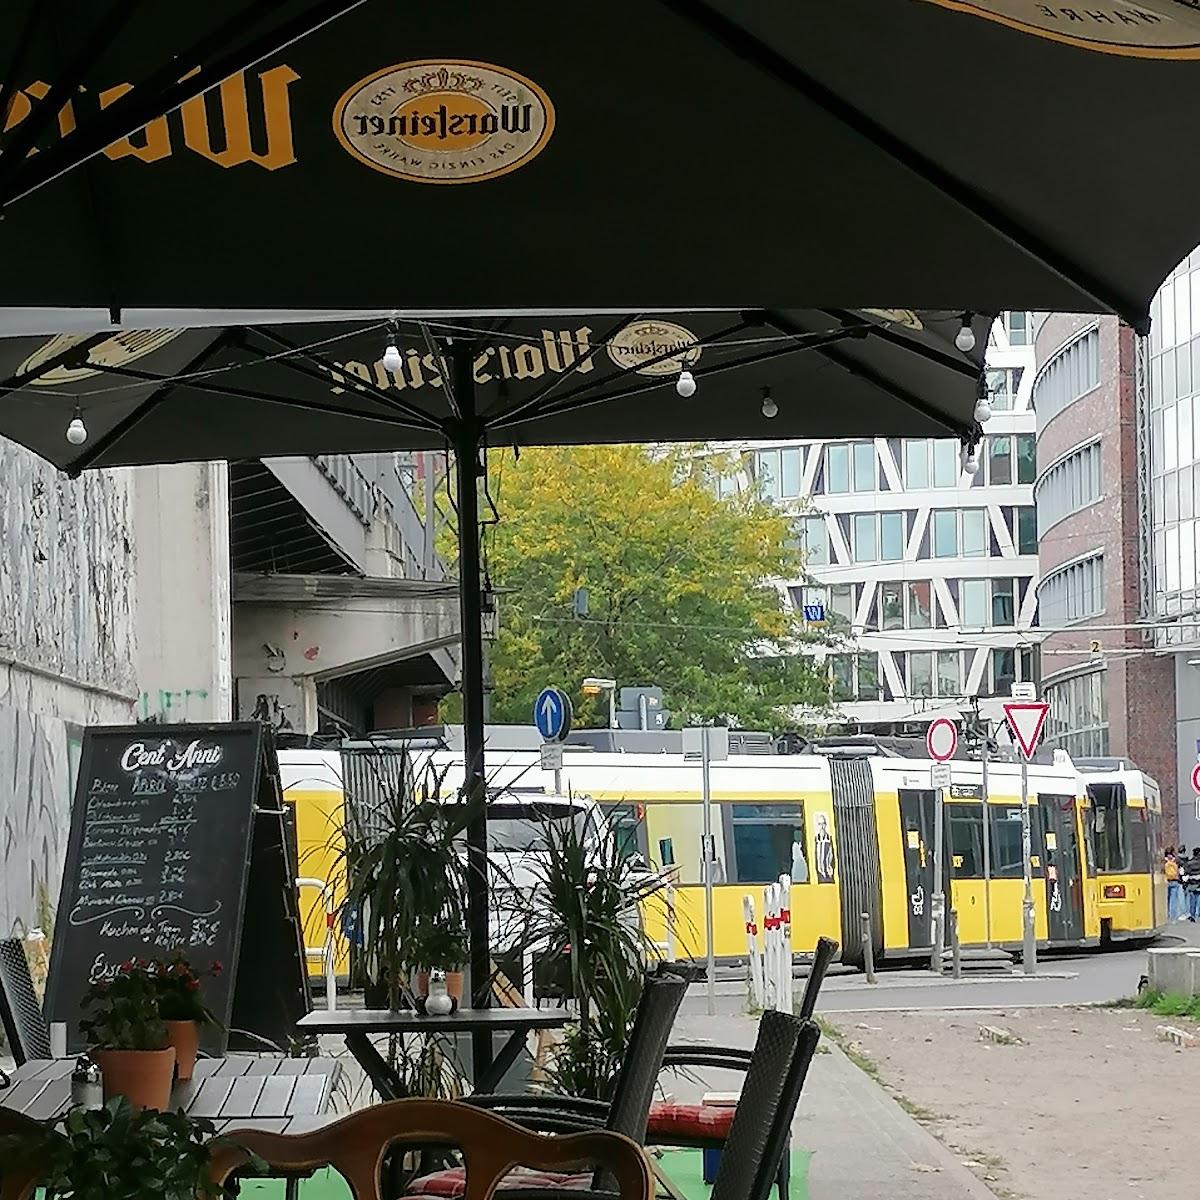 Restaurant "Cent Anni" in Berlin